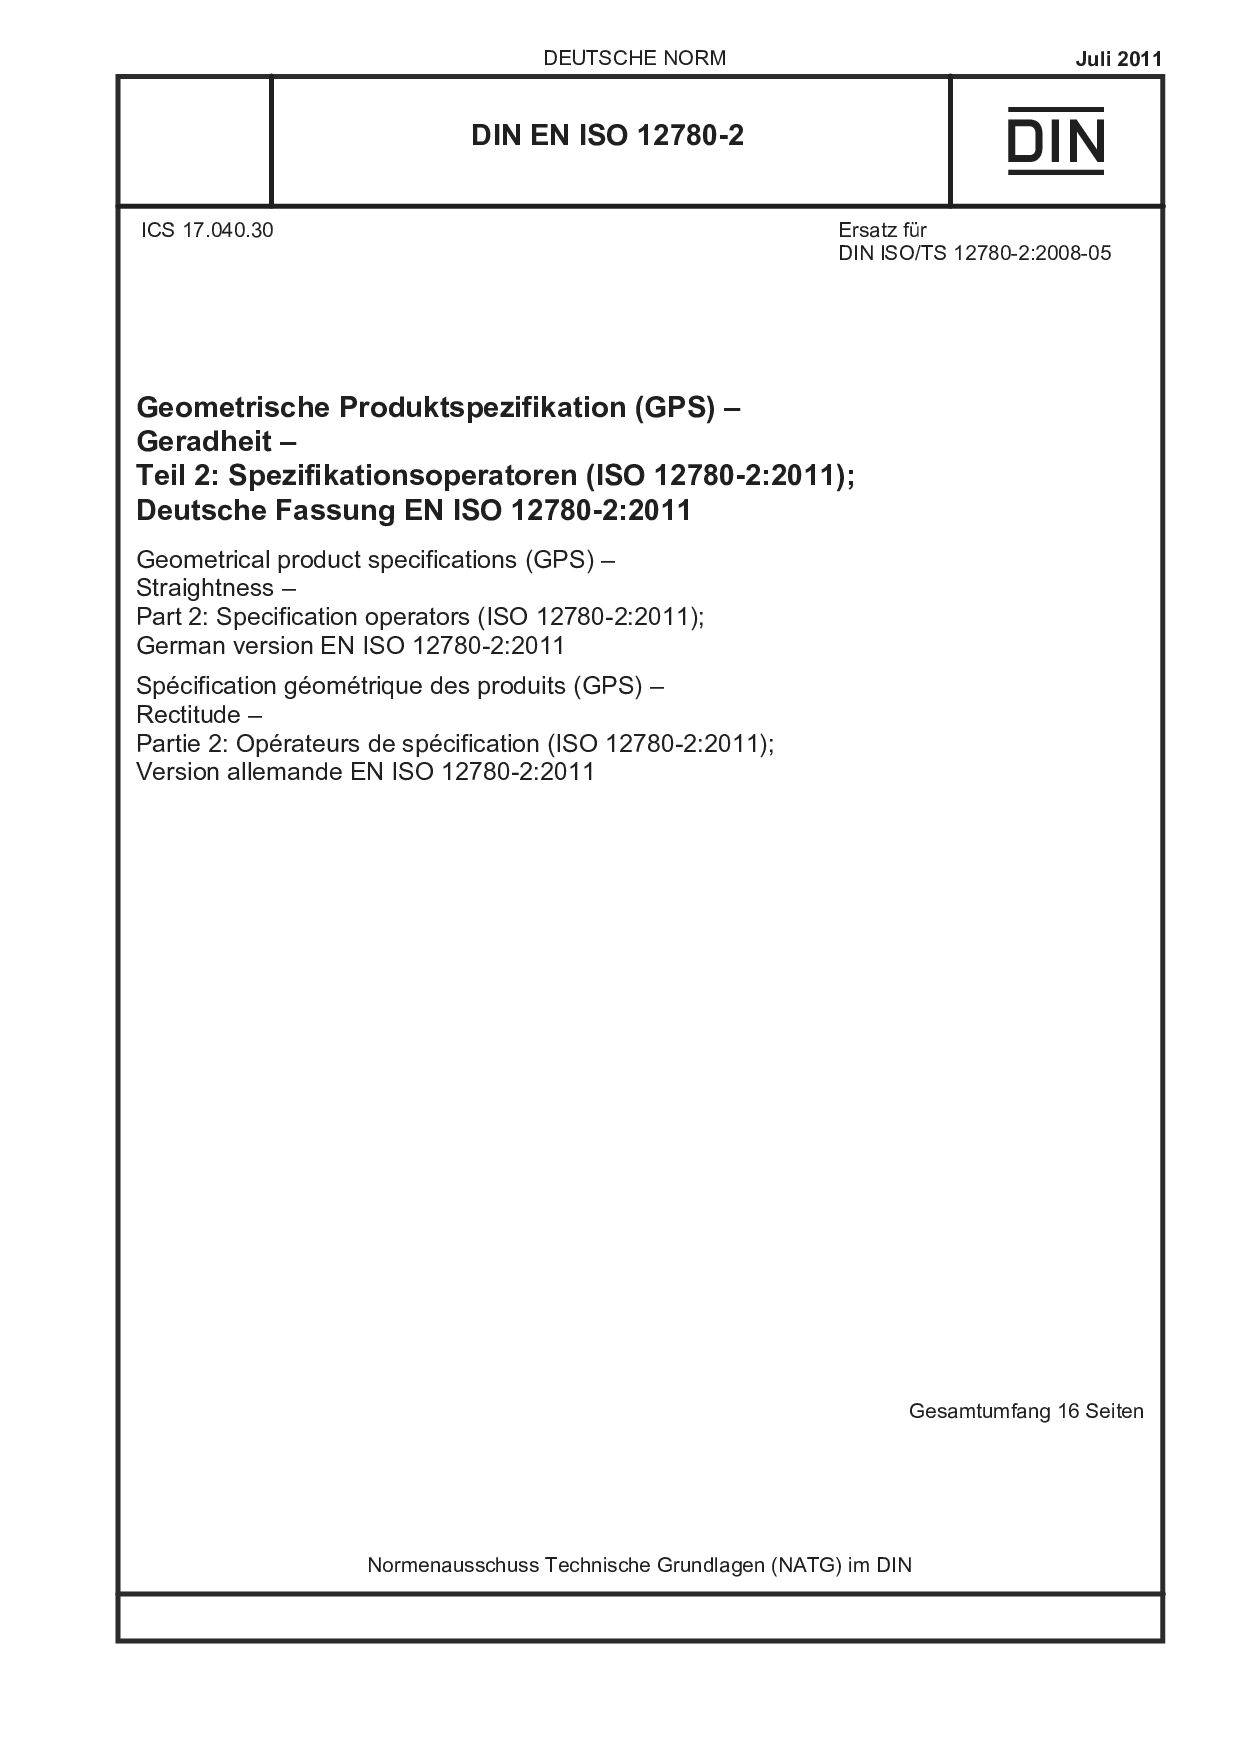 DIN EN ISO 12780-2:2011